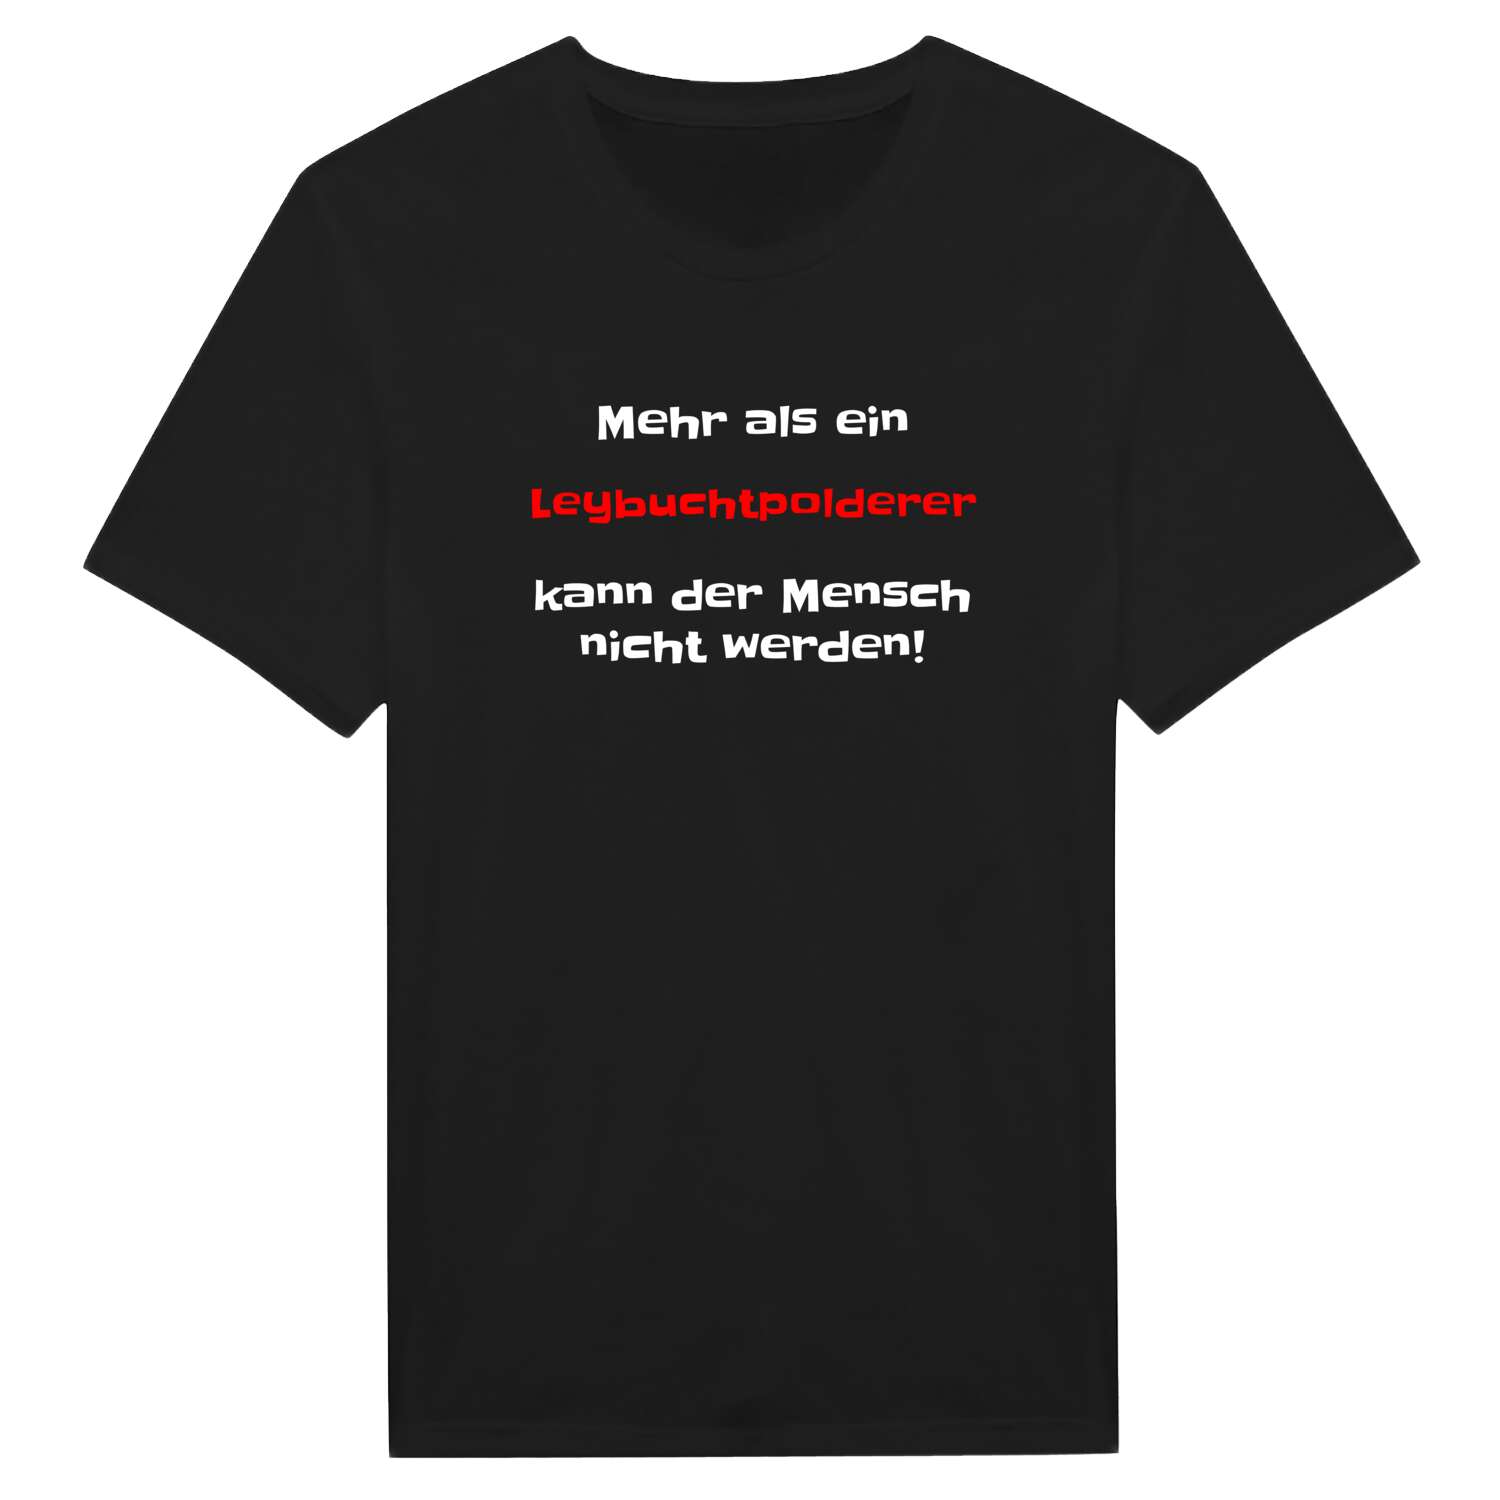 Leybuchtpolder T-Shirt »Mehr als ein«